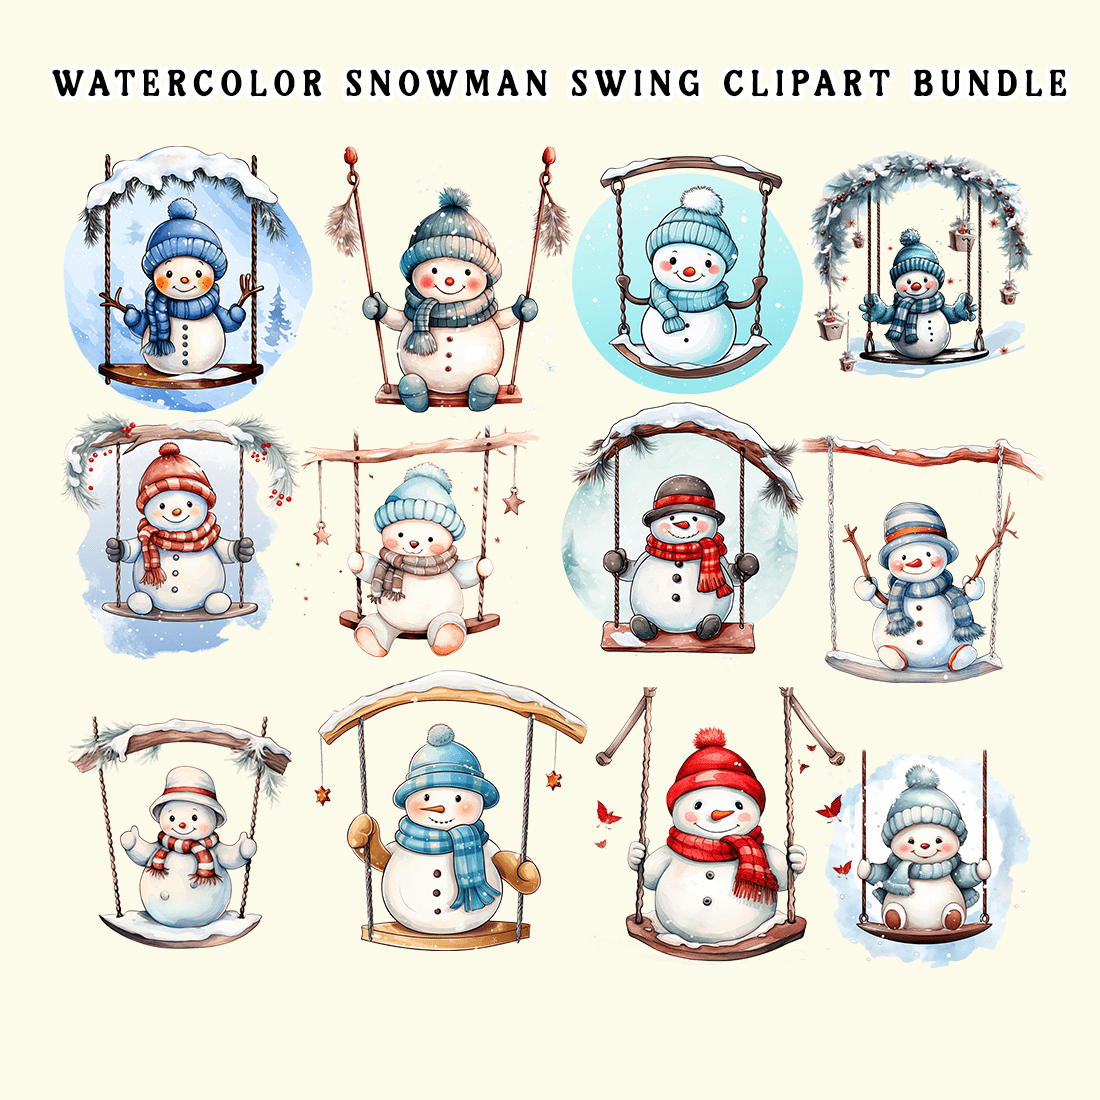 Watercolor Snowman Swing Clipart Bundle preview image.